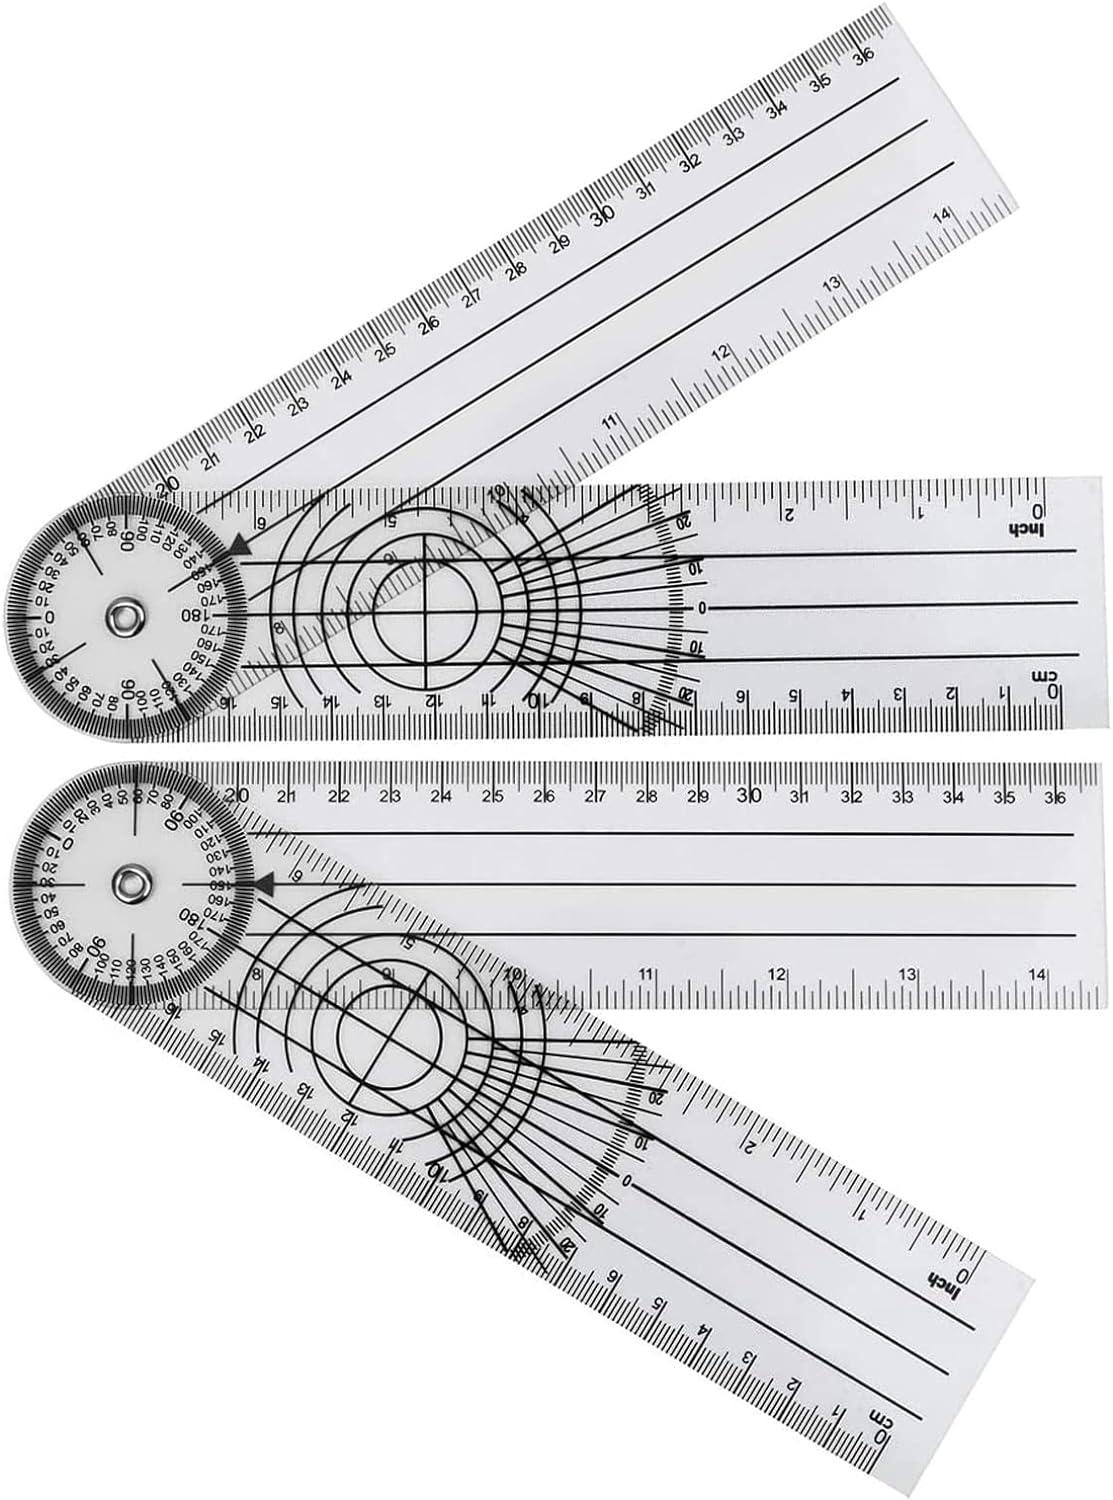 Góc của Rapporteur Rangeter Rappeter Rapporteur với máy đo thang đo thang đo của công cụ đo góc cho hệ thống cột sống mm/inch 2 phần